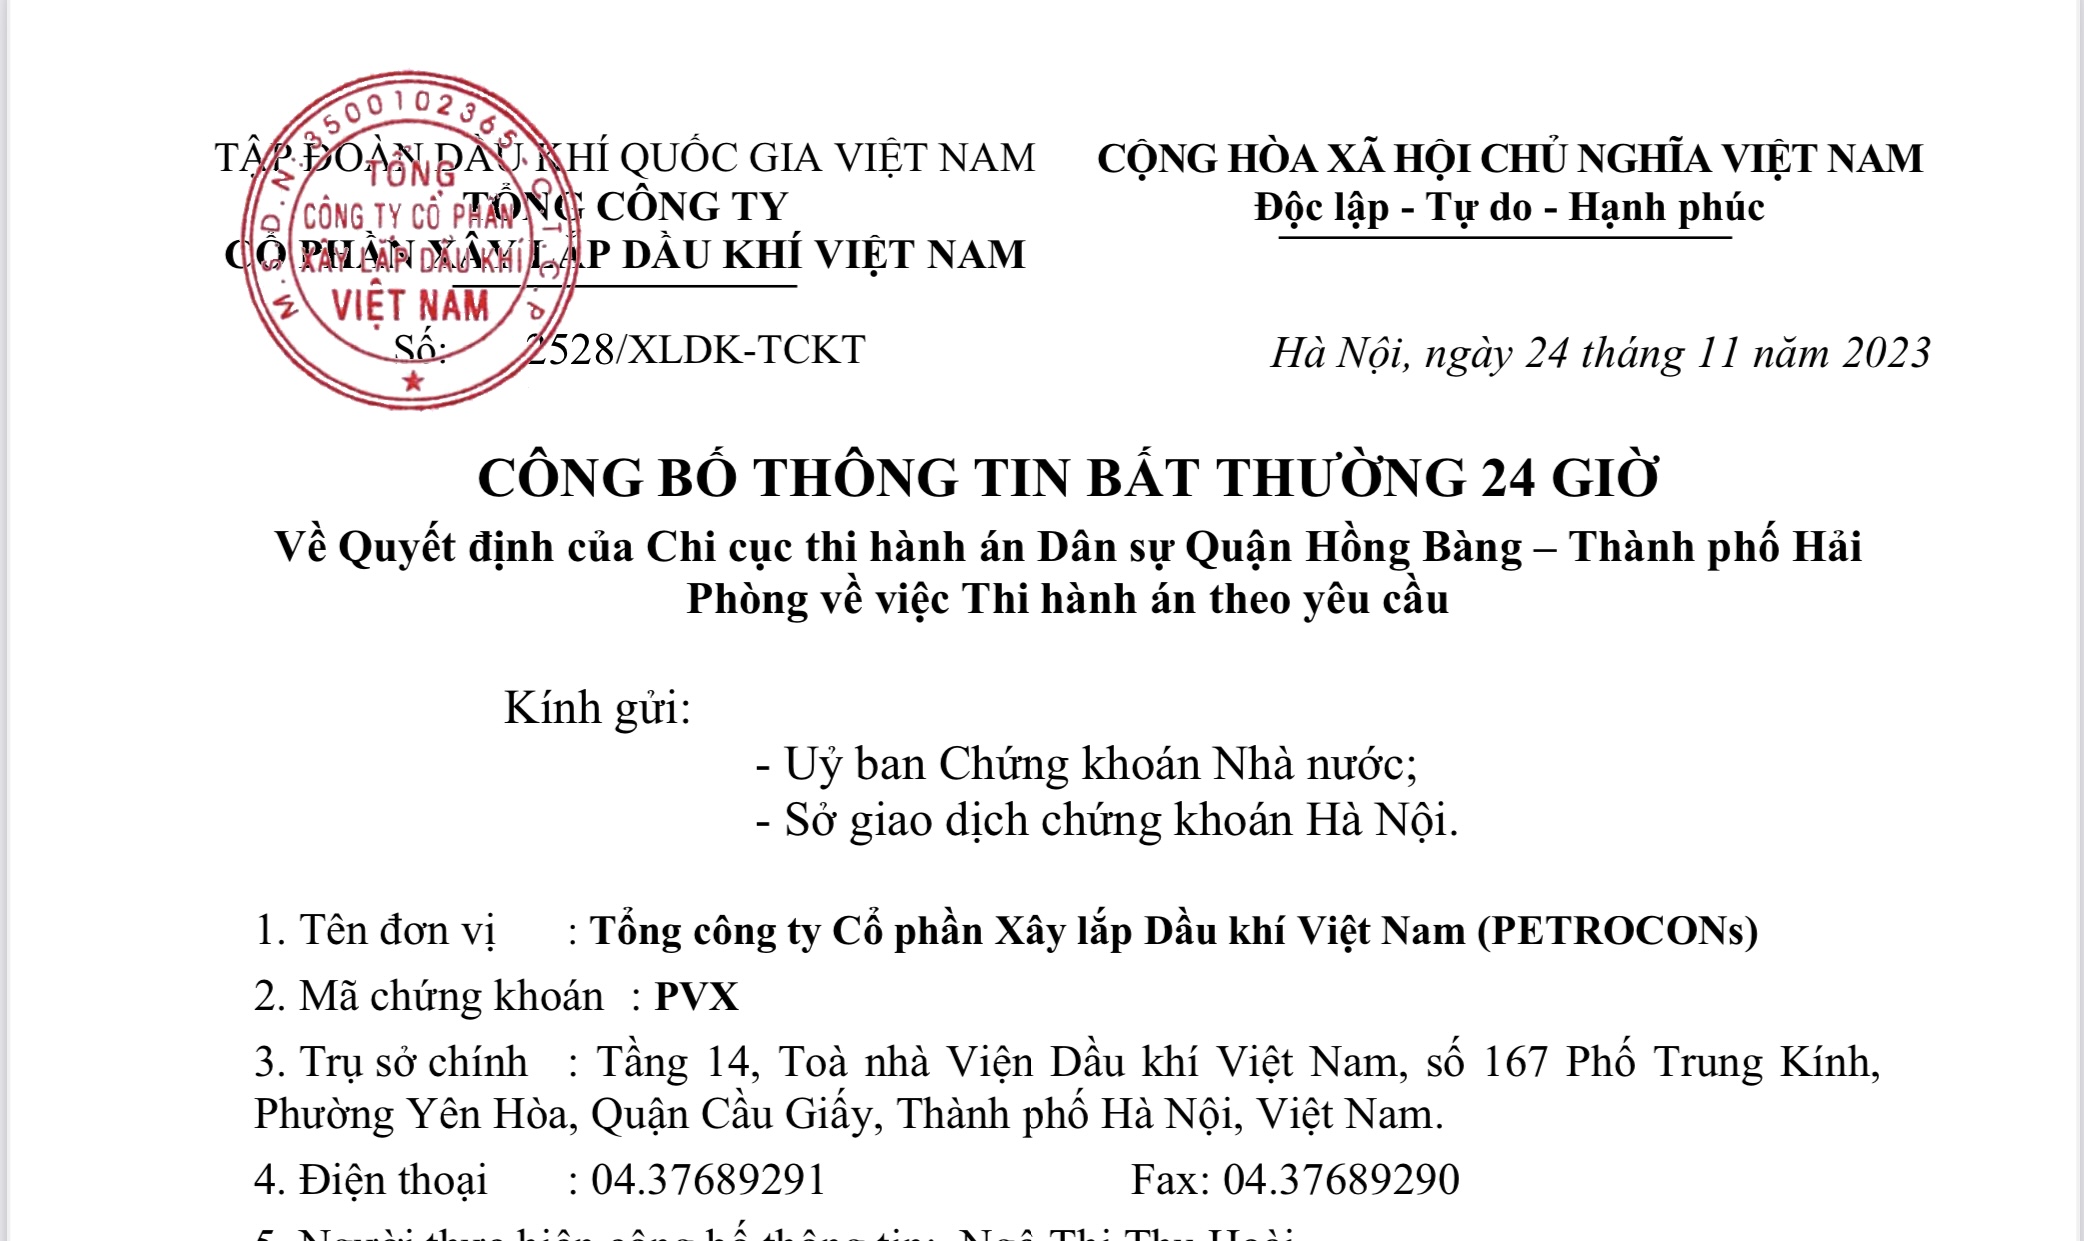  PVX Công bố thông tin Bất thường 24 giờ về Quyết định của Chi cục thi hành Dân sự Quận Hồng Bàng - Thành phố Hải Phòng về việc Thi hành án  theo yêu cầu